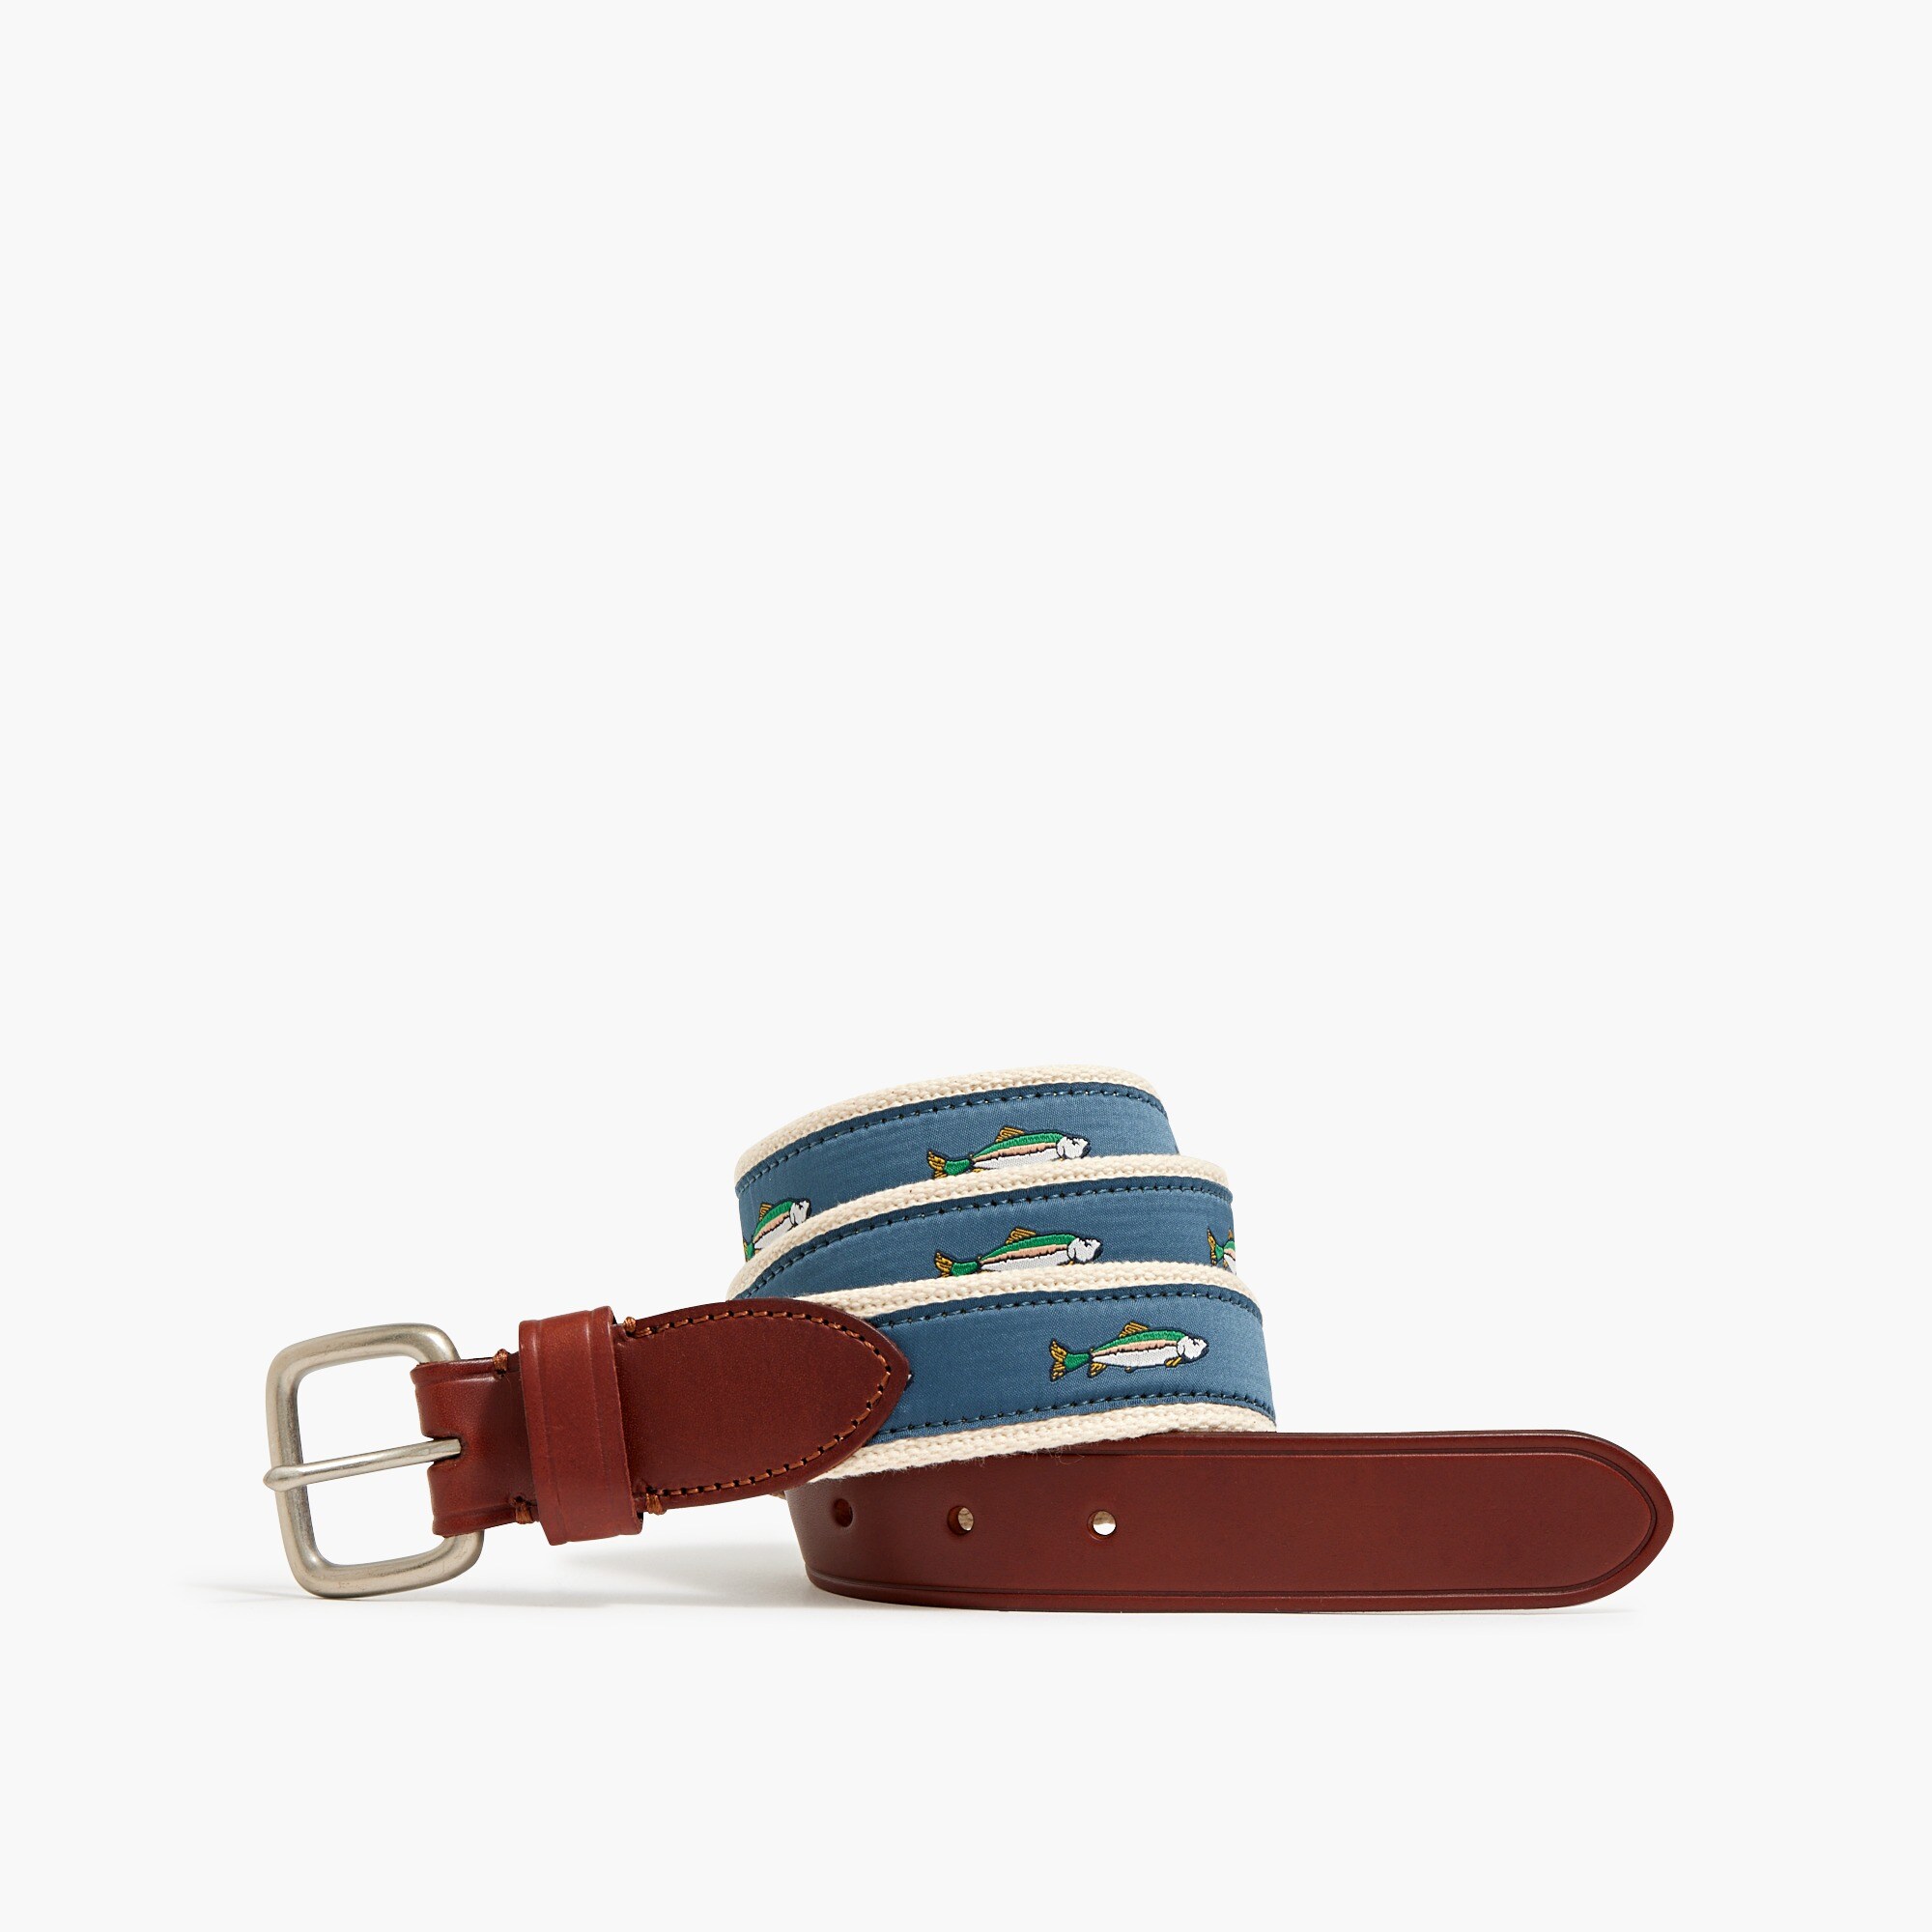  Embroidered patterned belt